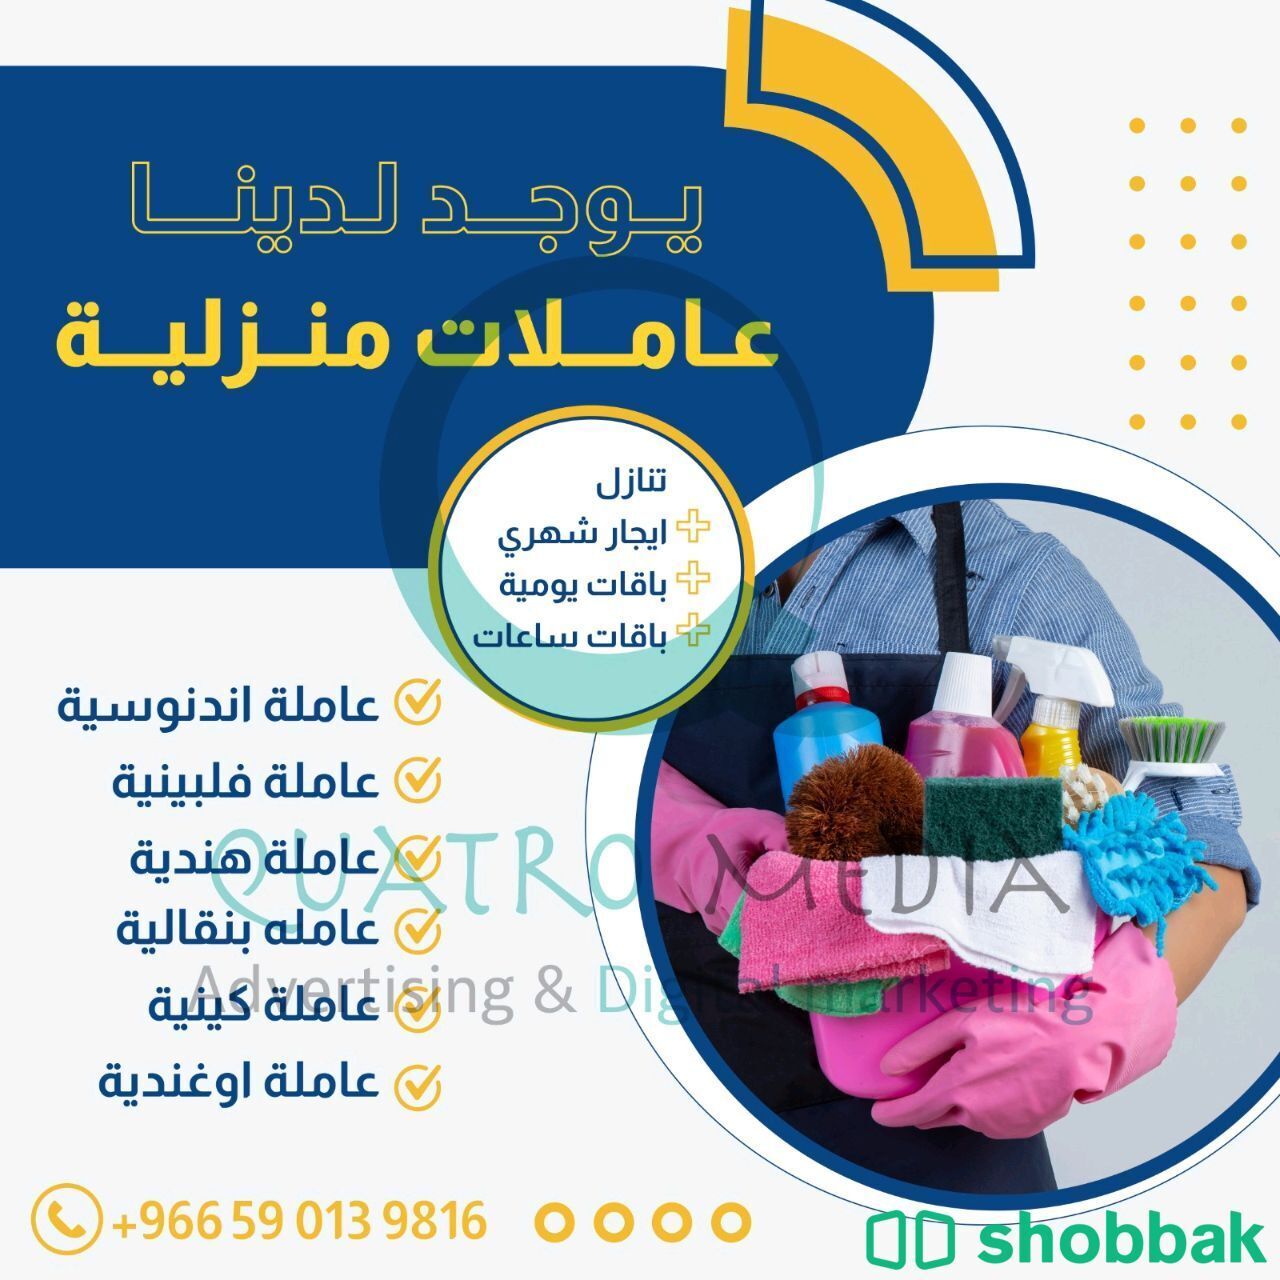 خدمات منزليه Shobbak Saudi Arabia